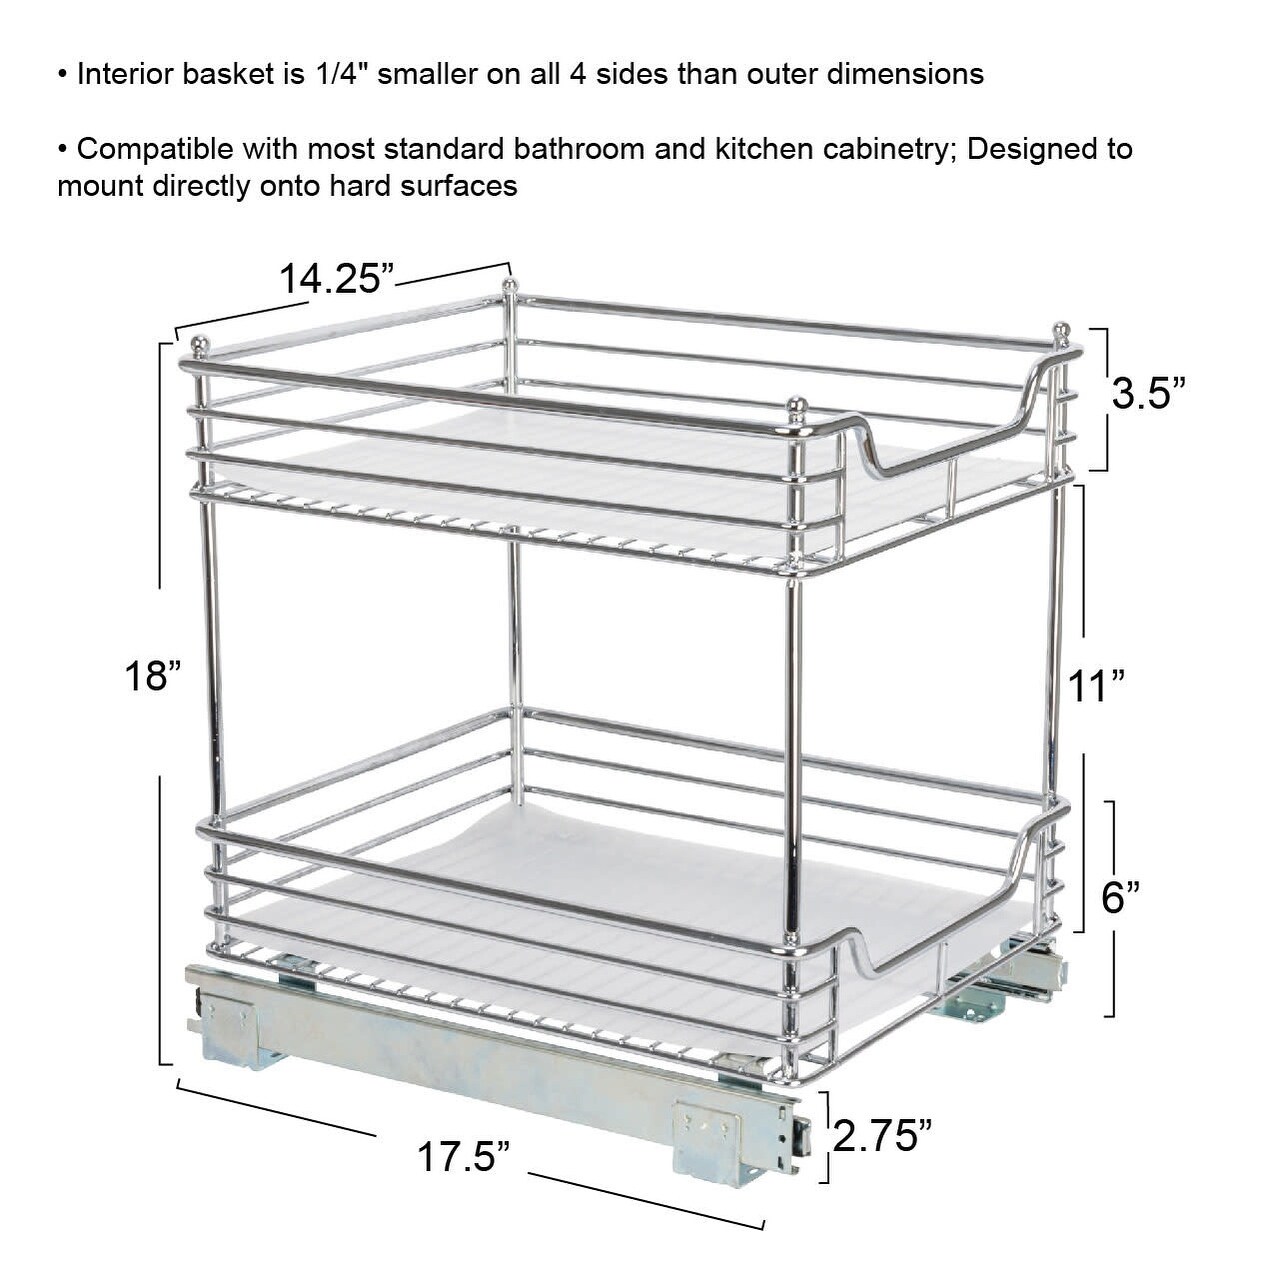 Glidez Slide-Out Storage Organizer - 2-Tier Design - Bed Bath & Beyond -  33980854